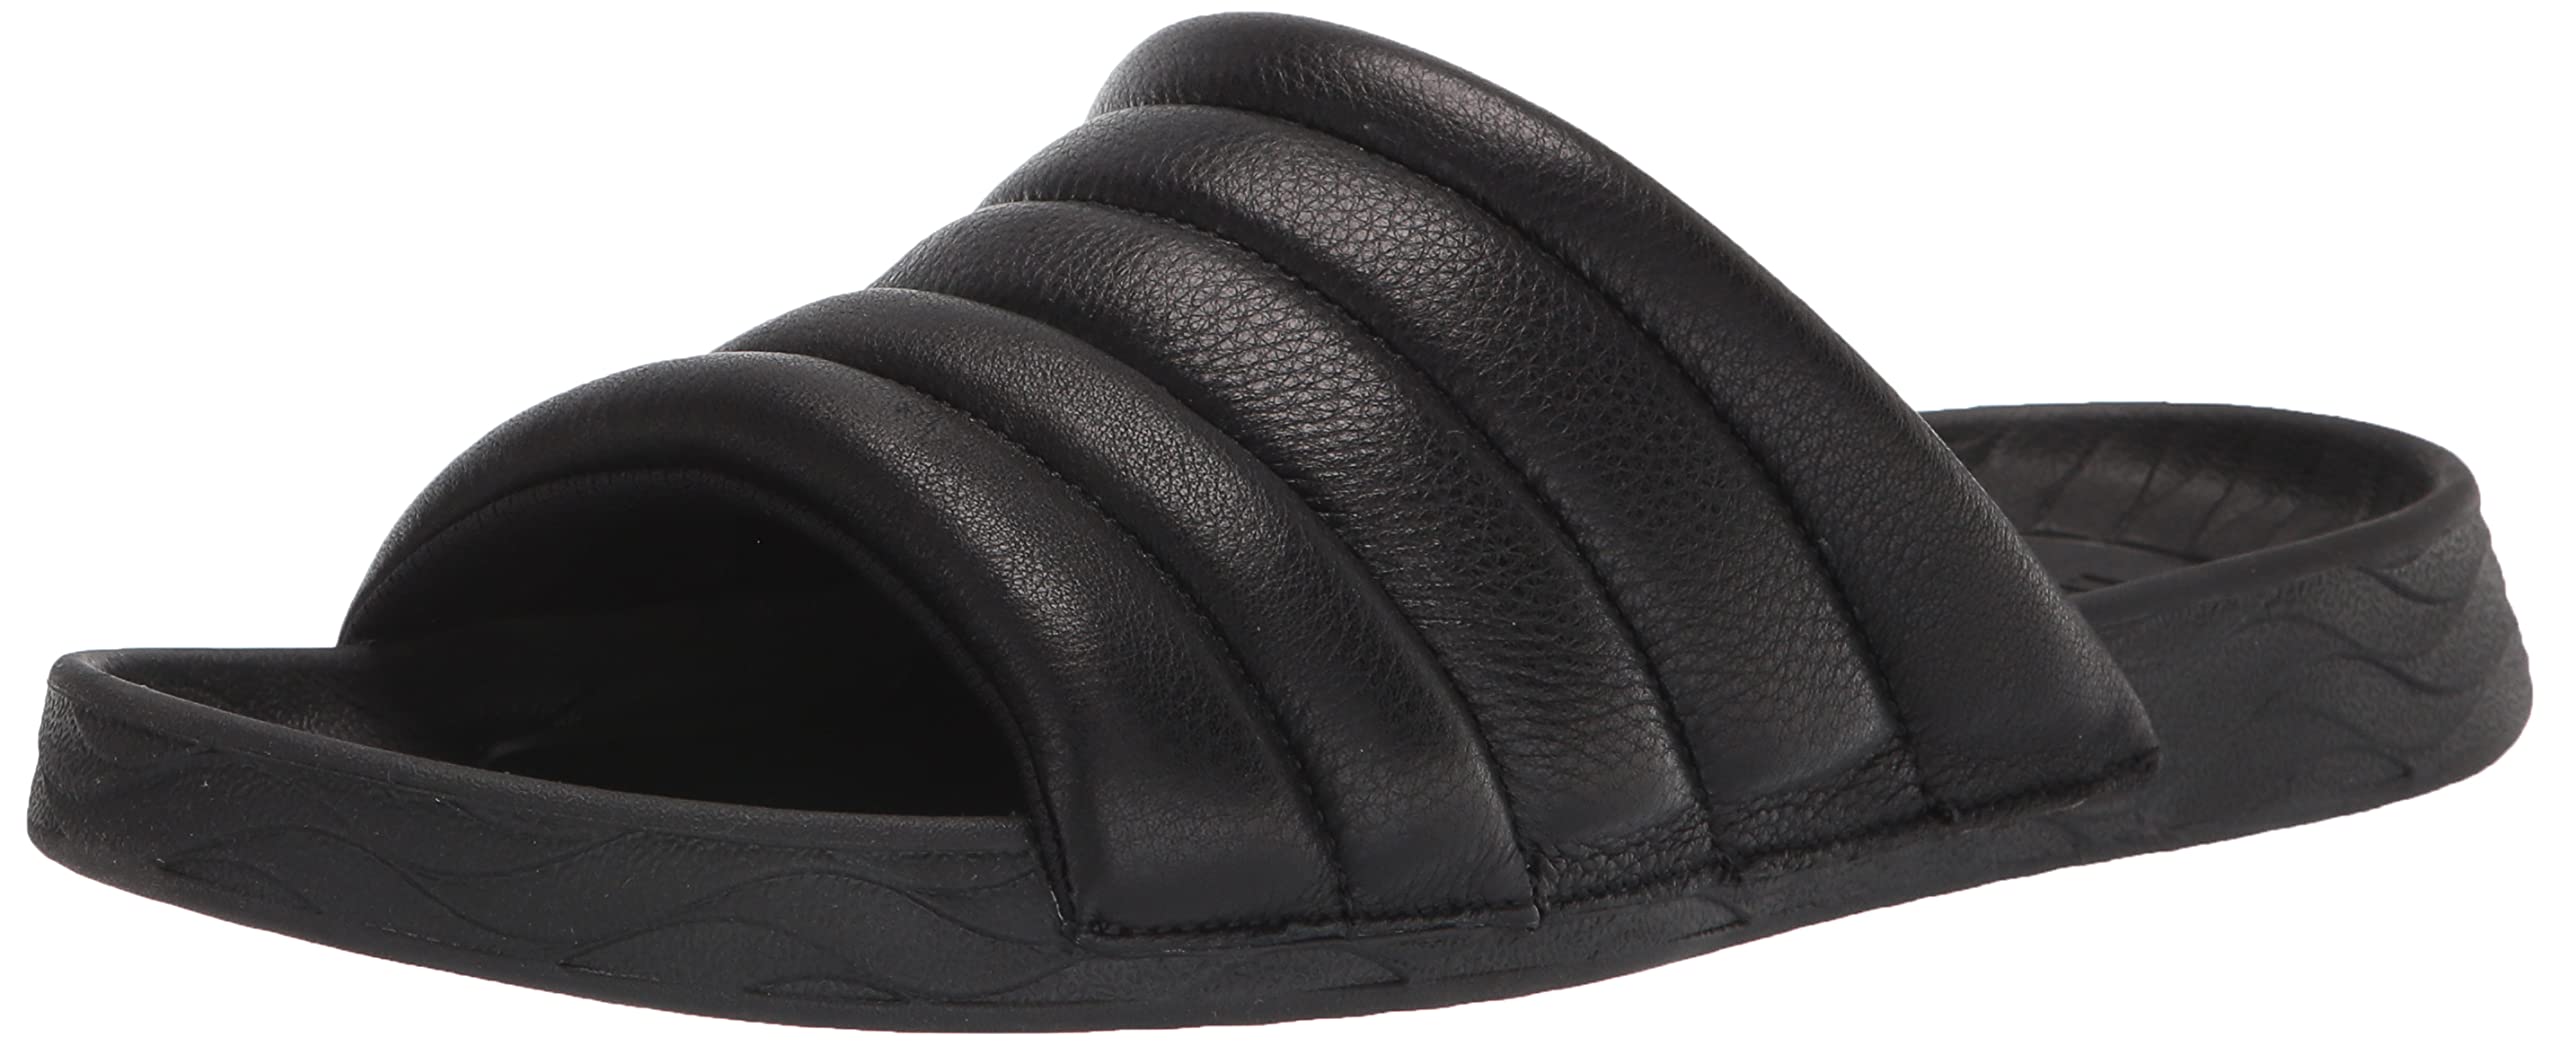 Kenneth Cole New York Men's Nova Quilted Leather Slide Sandal